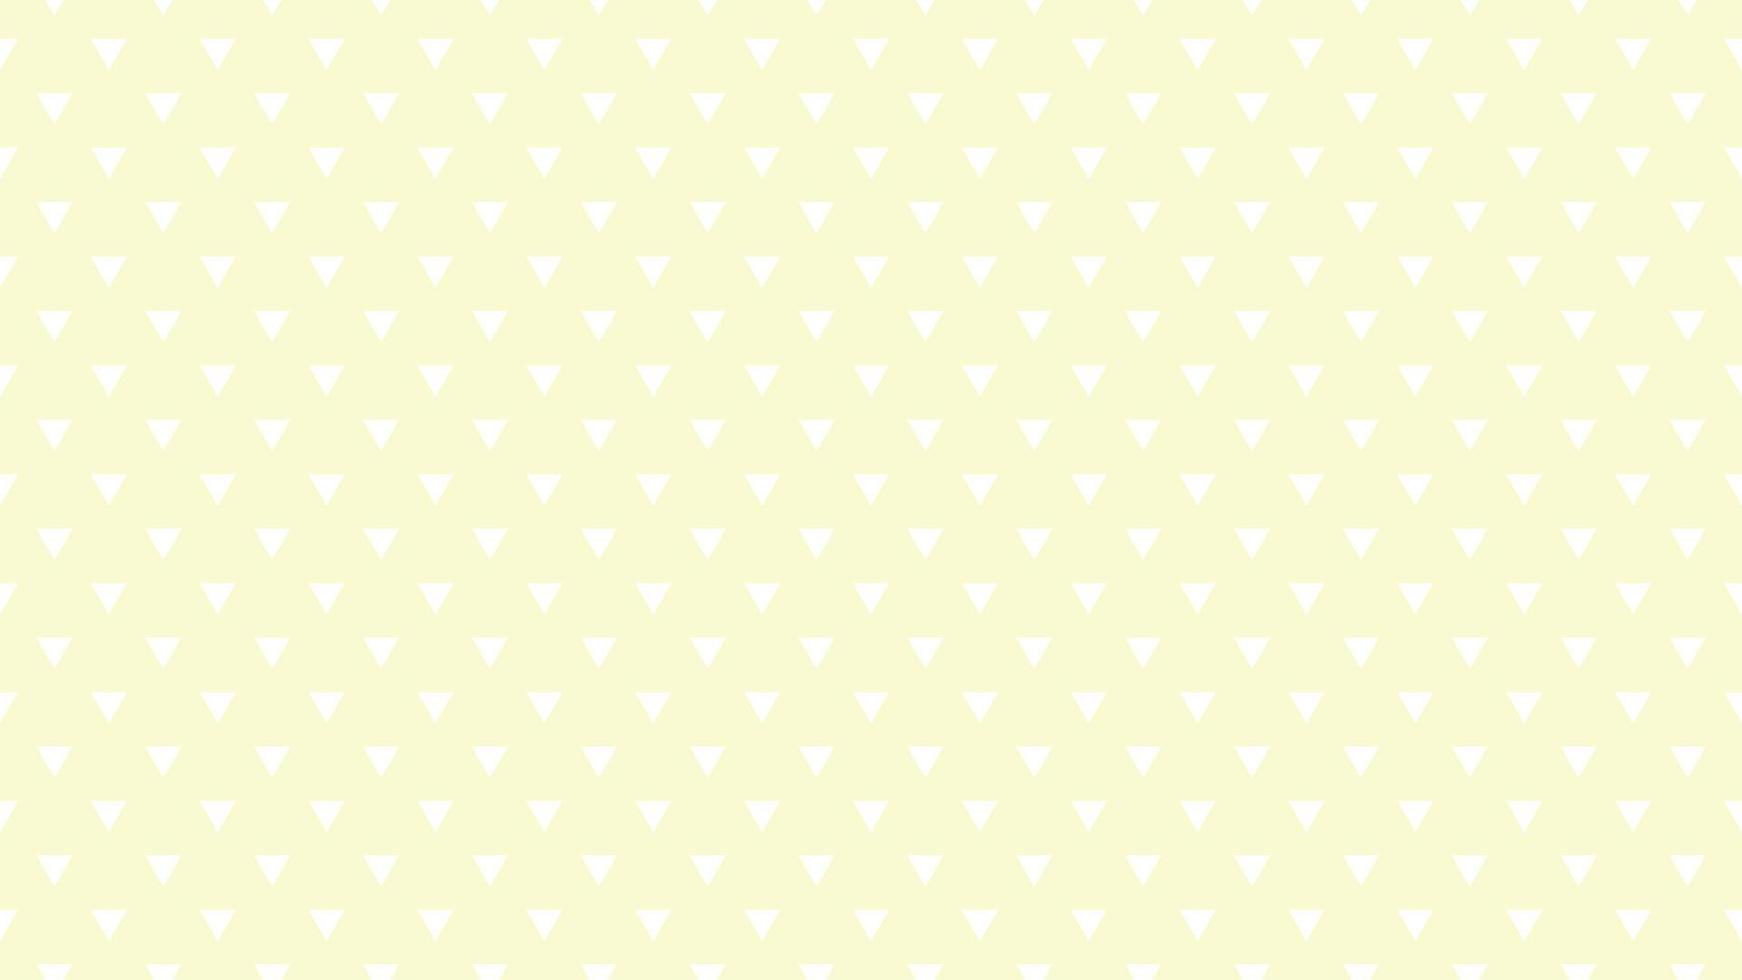 triângulos de cor branca sobre fundo amarelo dourado claro vetor